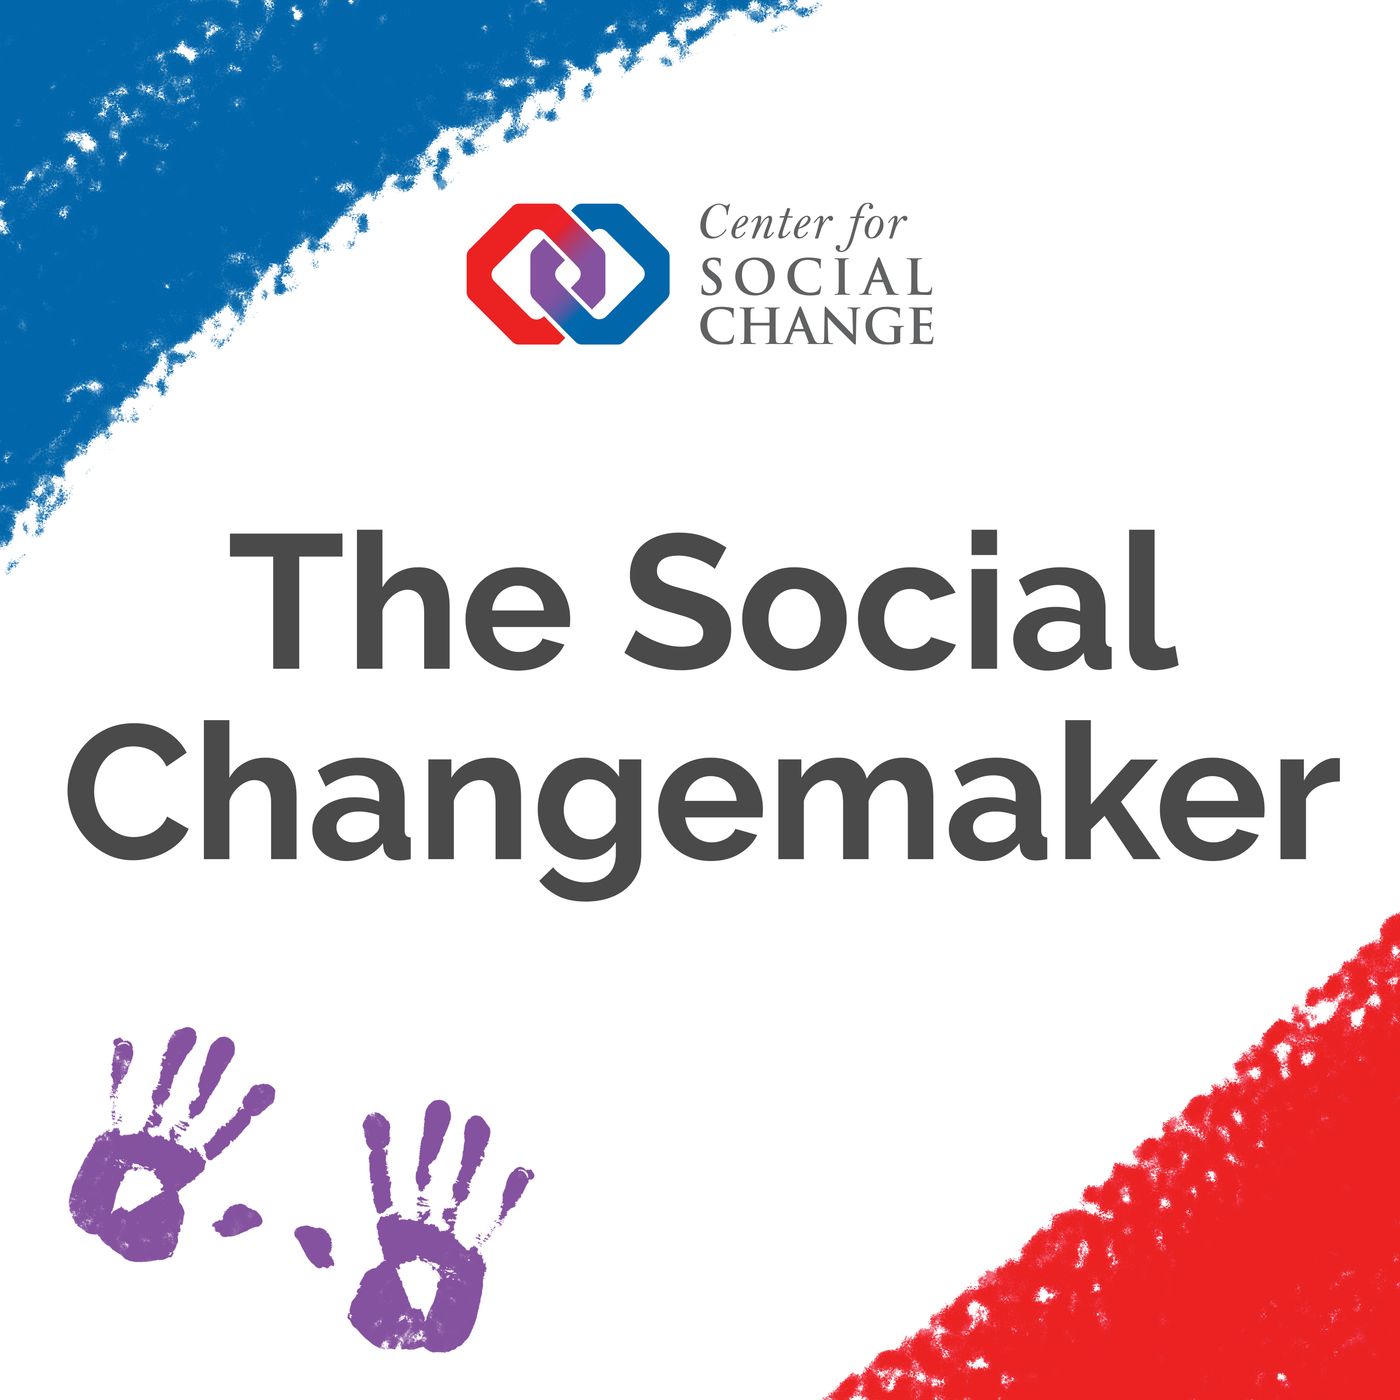 The Social Changemaker